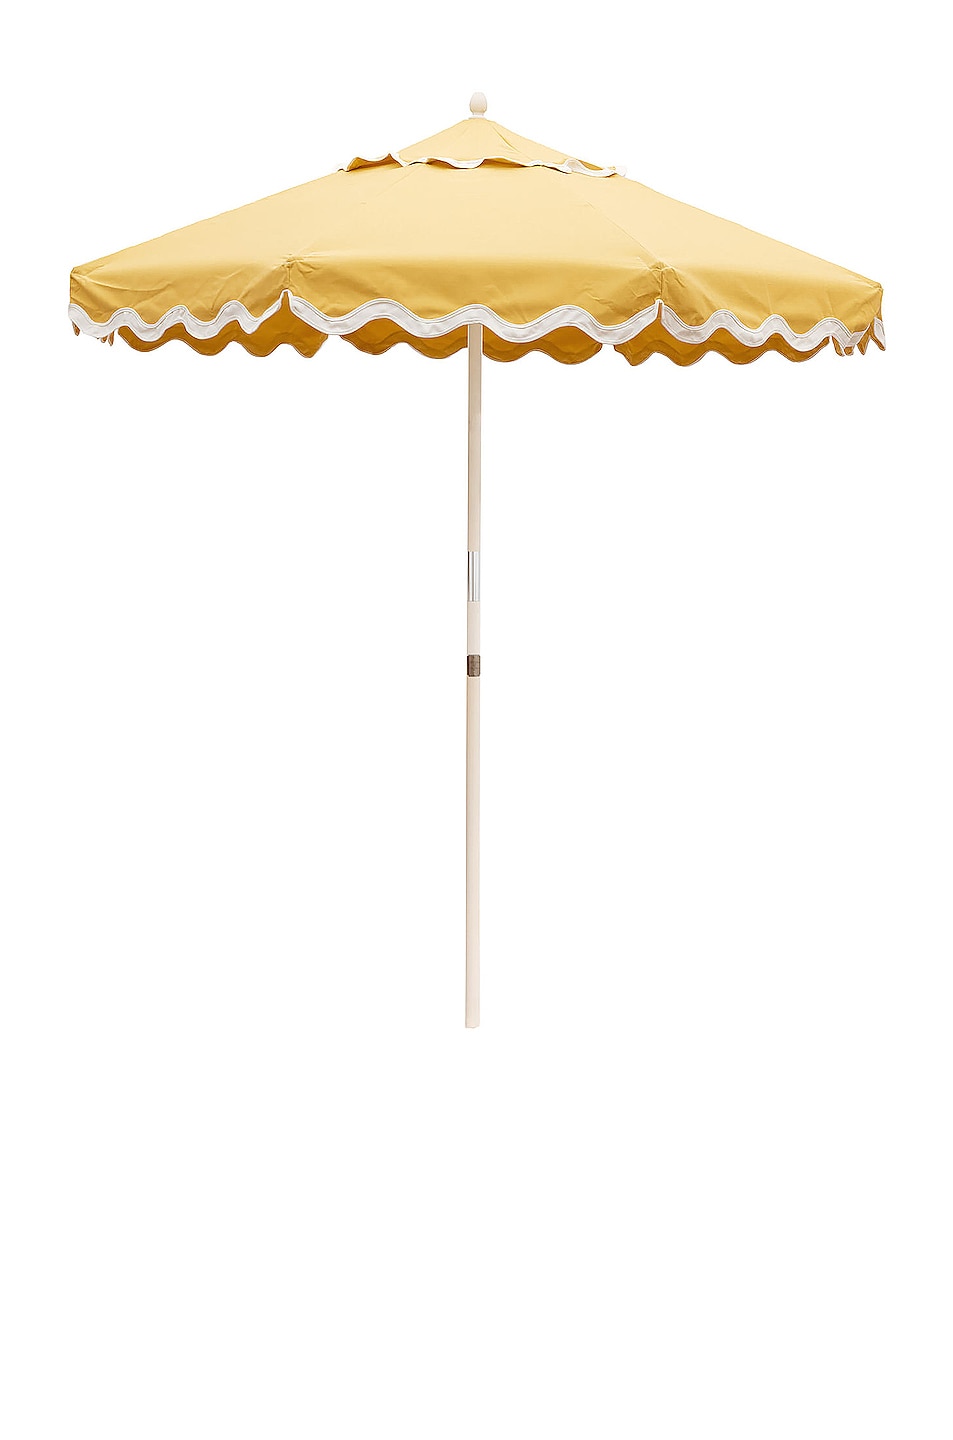 Image 1 of business & pleasure co. Market Umbrella in Riviera Mimosa